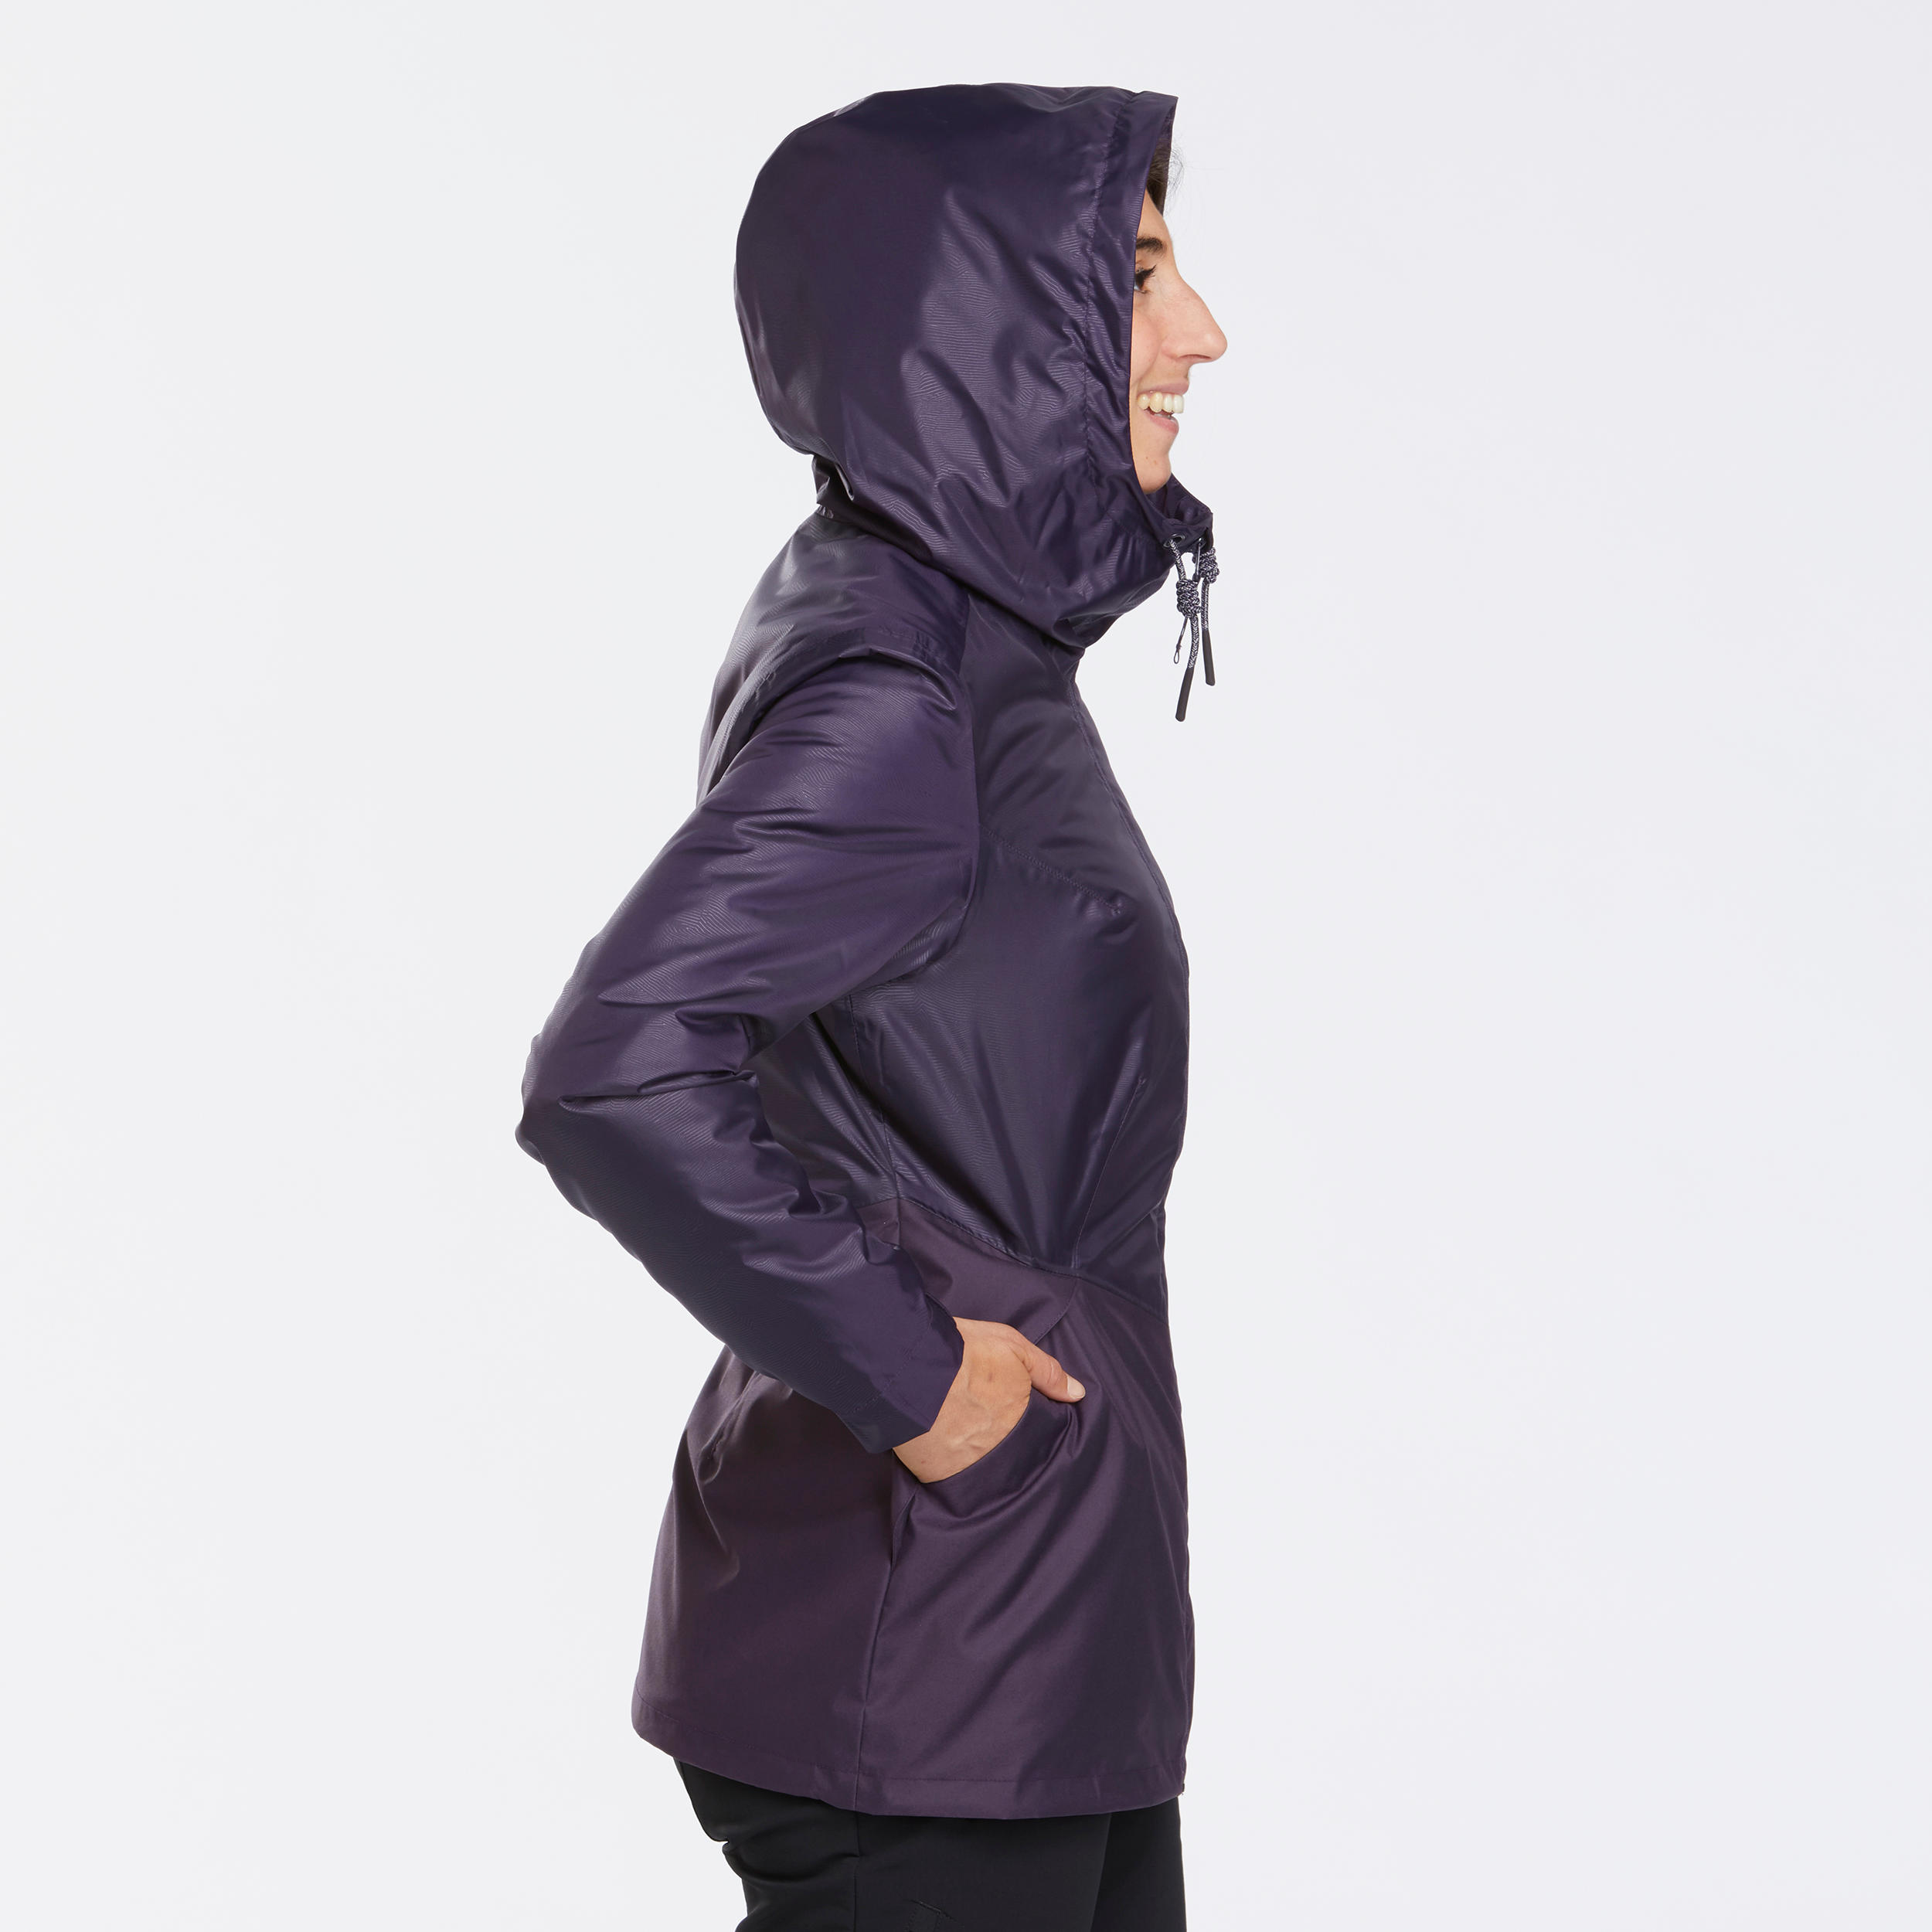 Women’s waterproof winter hiking jacket - SH100 -5°C 5/10